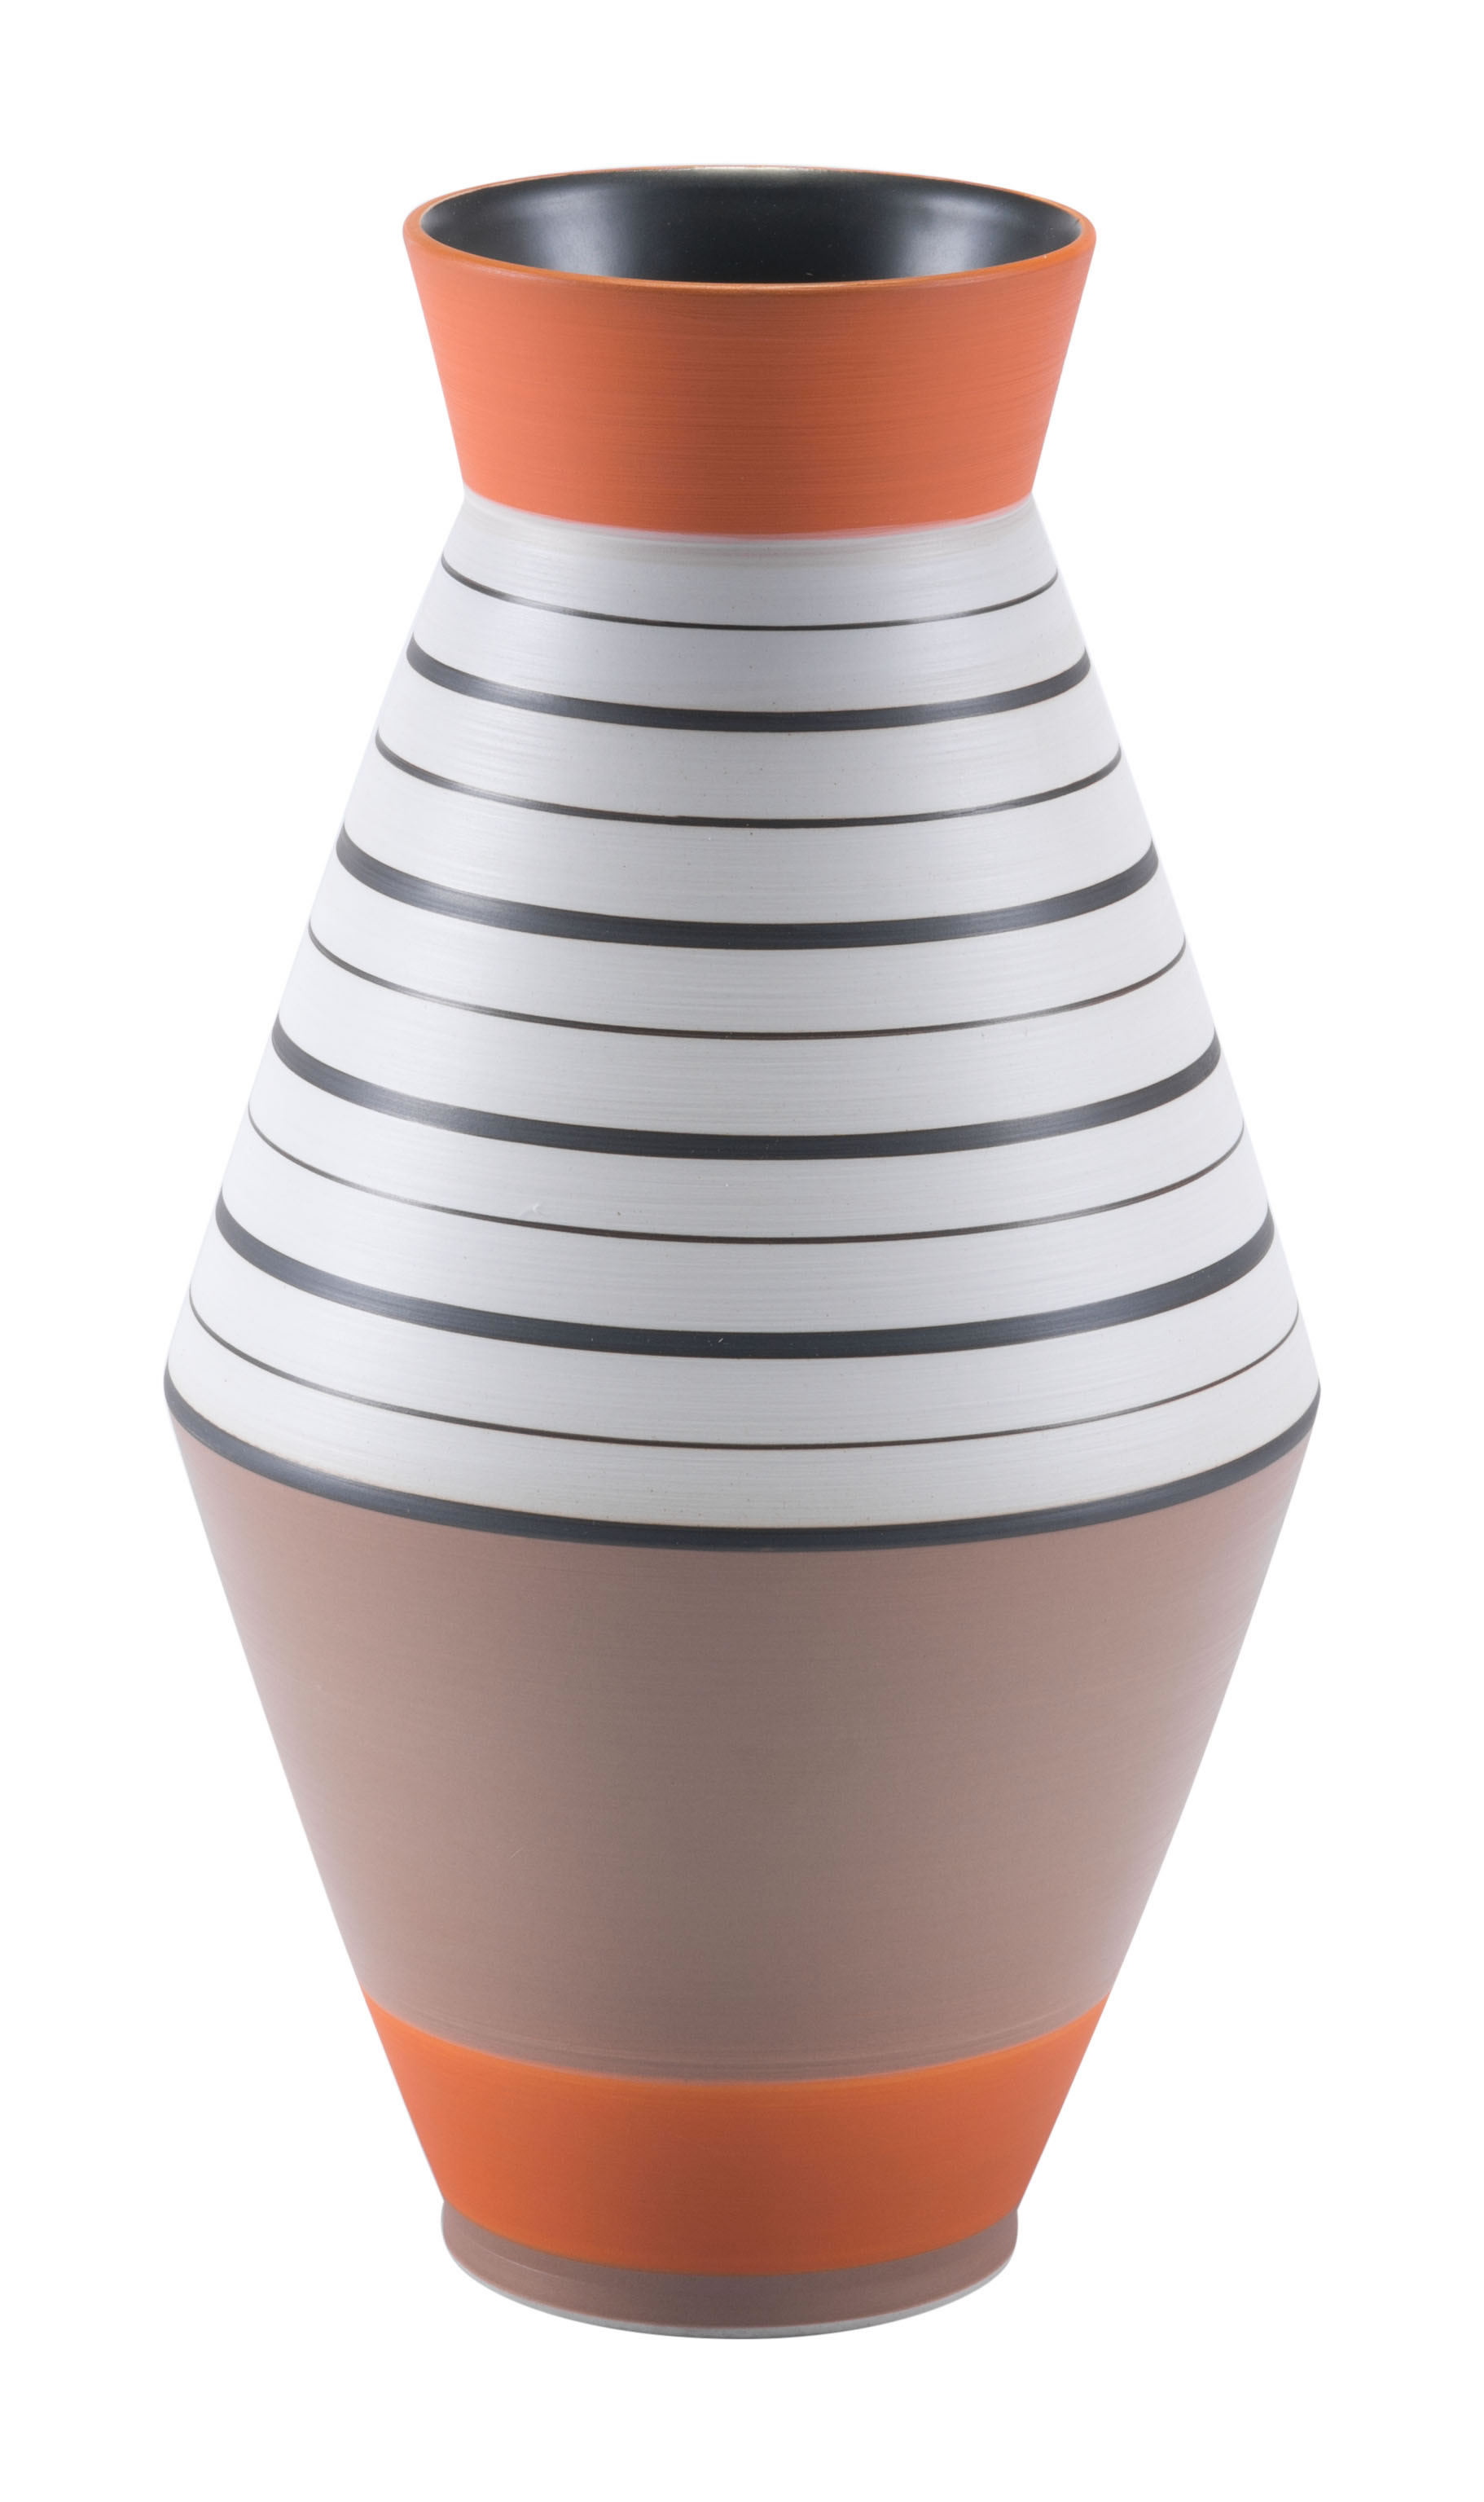 6.7" x 6.7" x 12.8" Multicolor, Ceramic, Small Vase